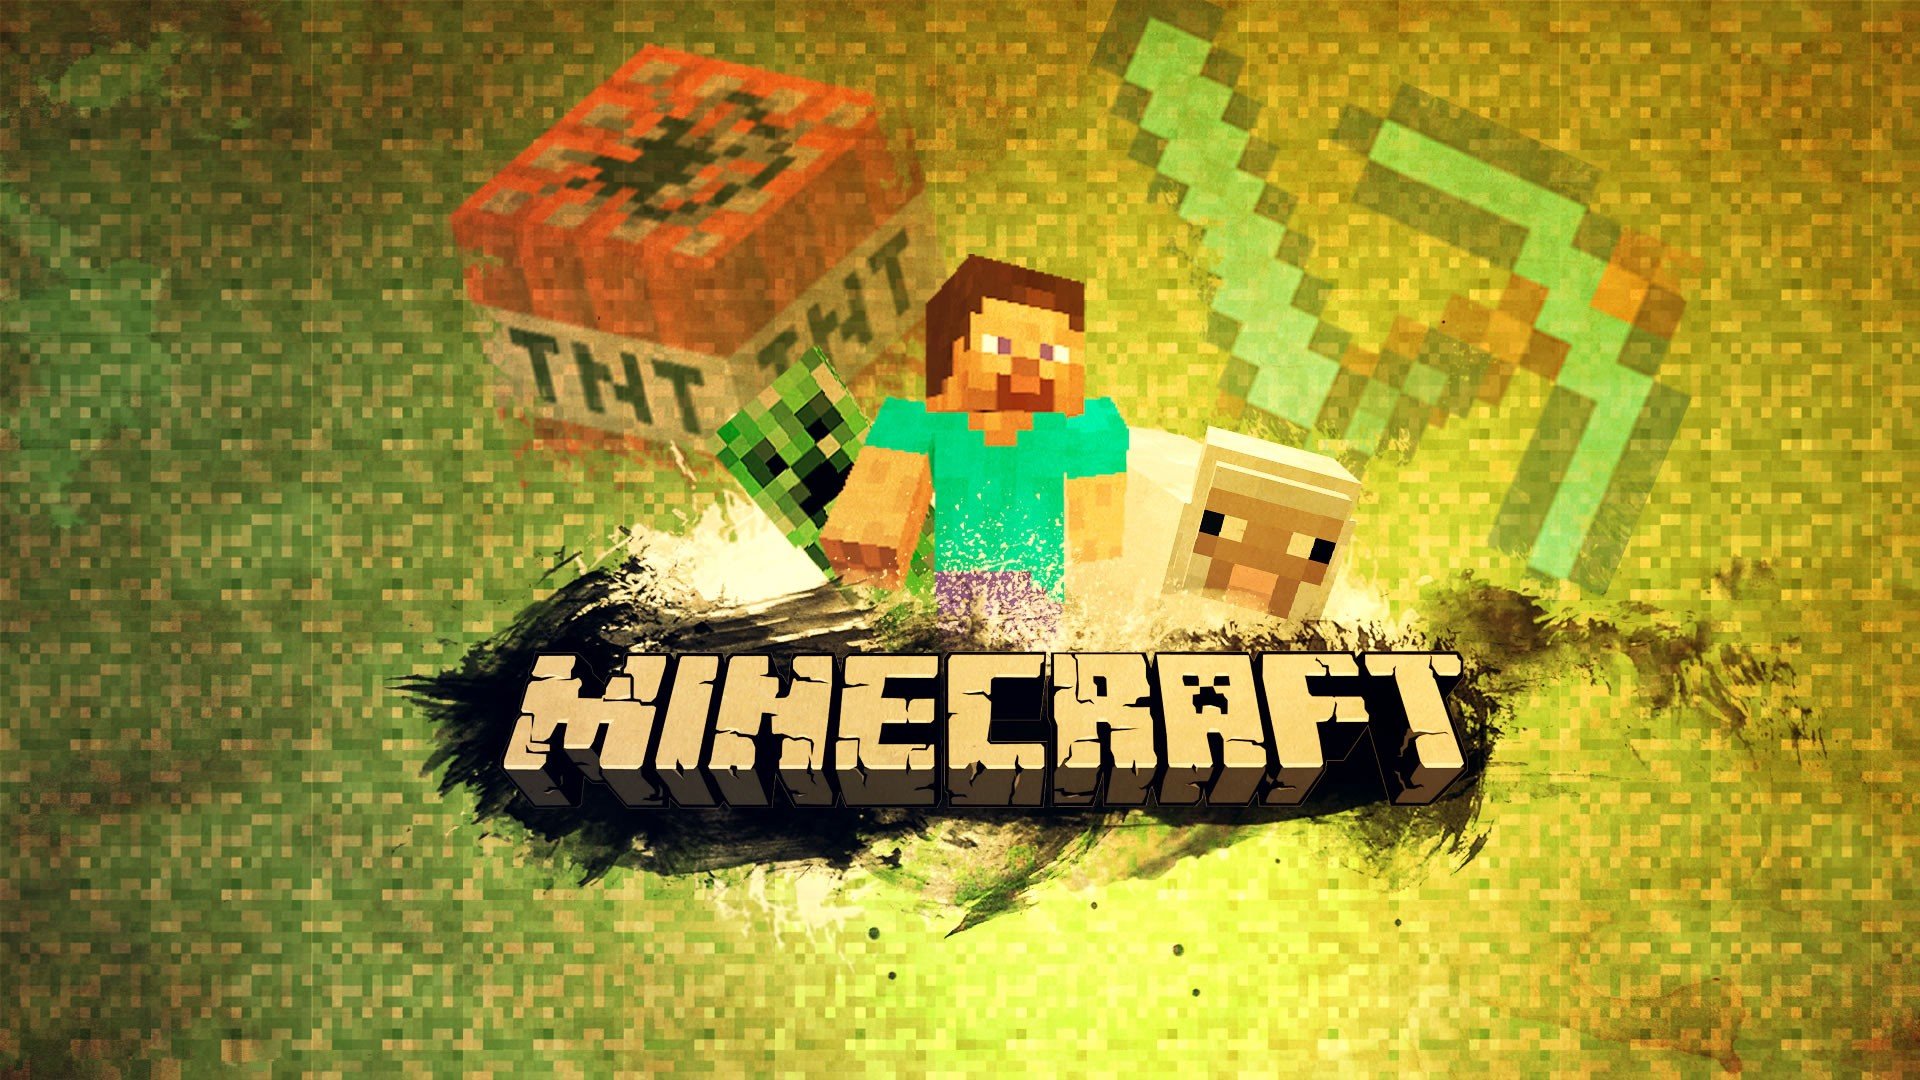 Sucesso! Vdeos de Minecraft superam a marca de 1 trilho de visualizaes no YouTube